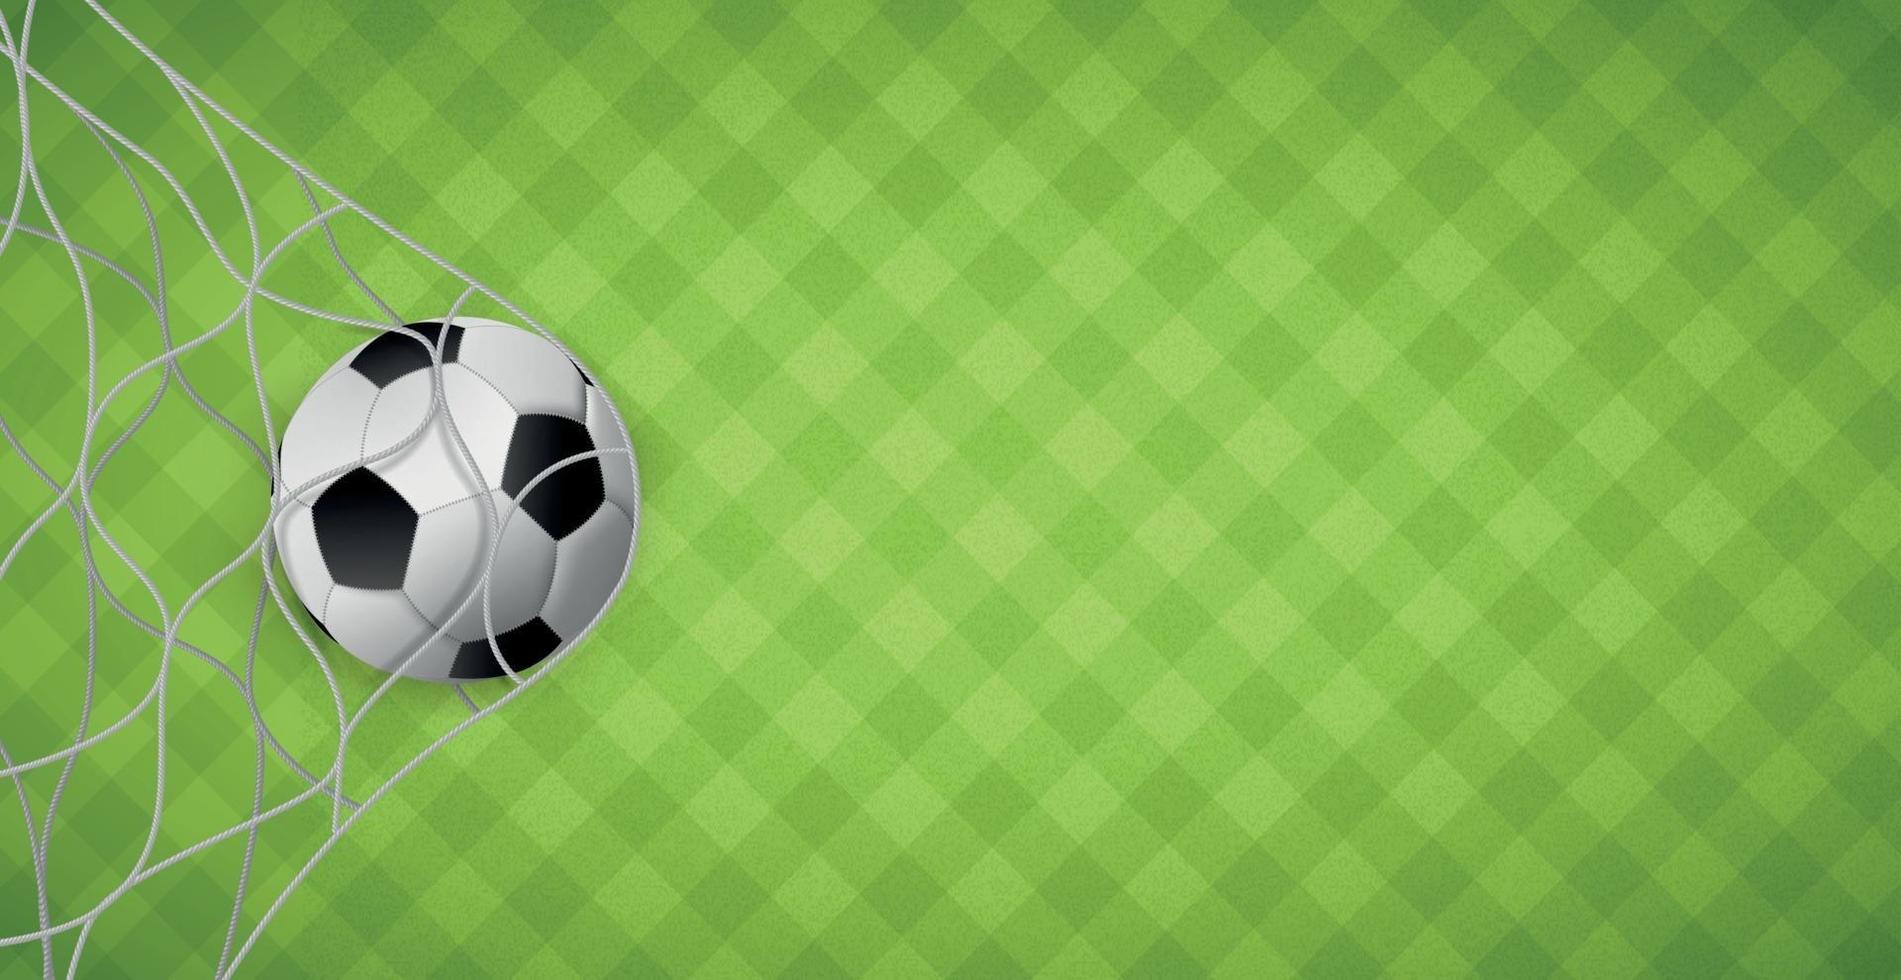 bola de futebol em uma rede de portões de futebol no fundo de um gramado verde - vetor